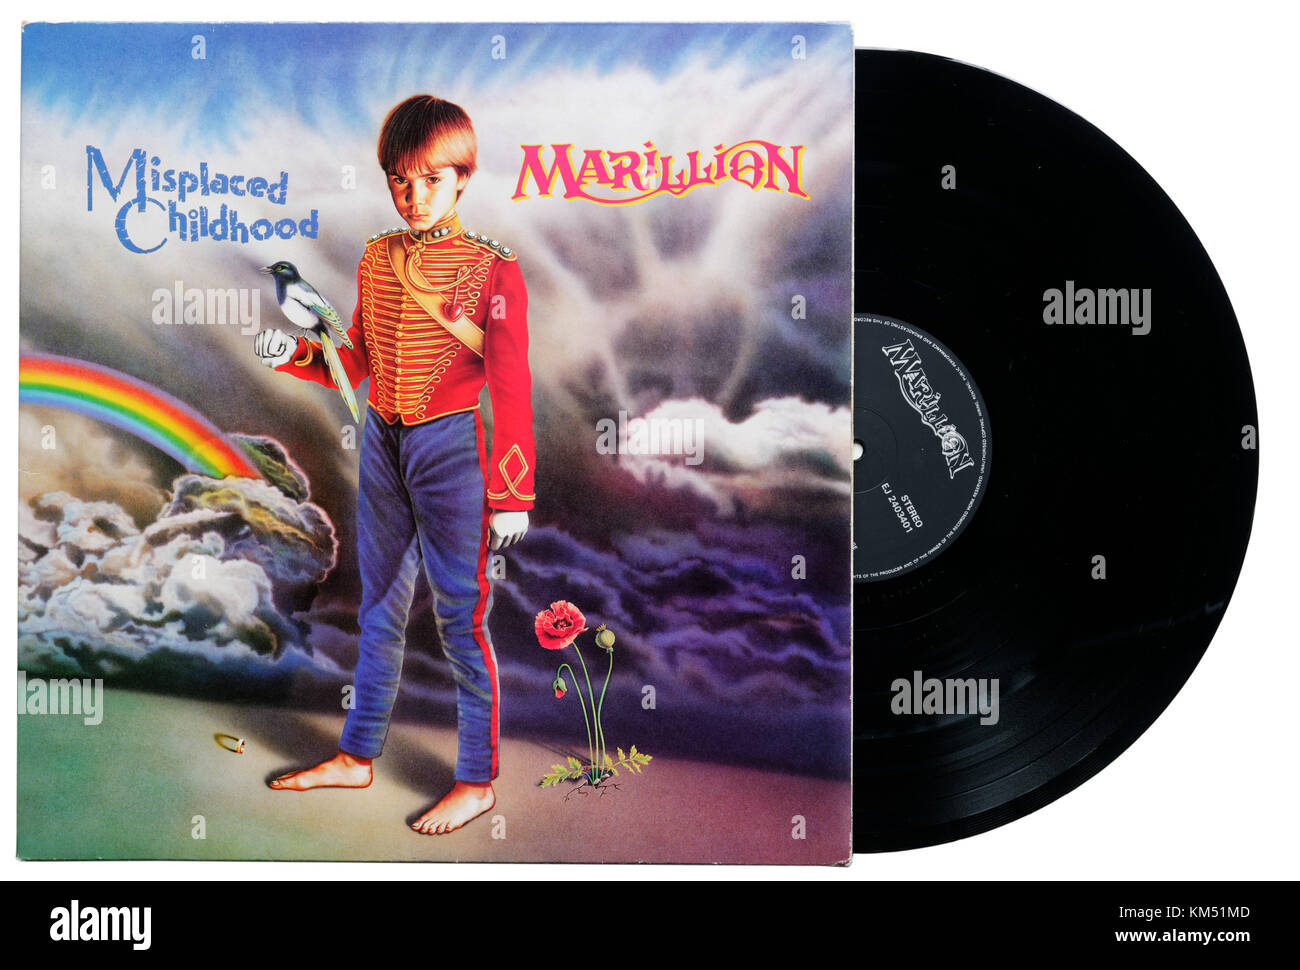 Marillion verlegt Kindheit album Stockfoto